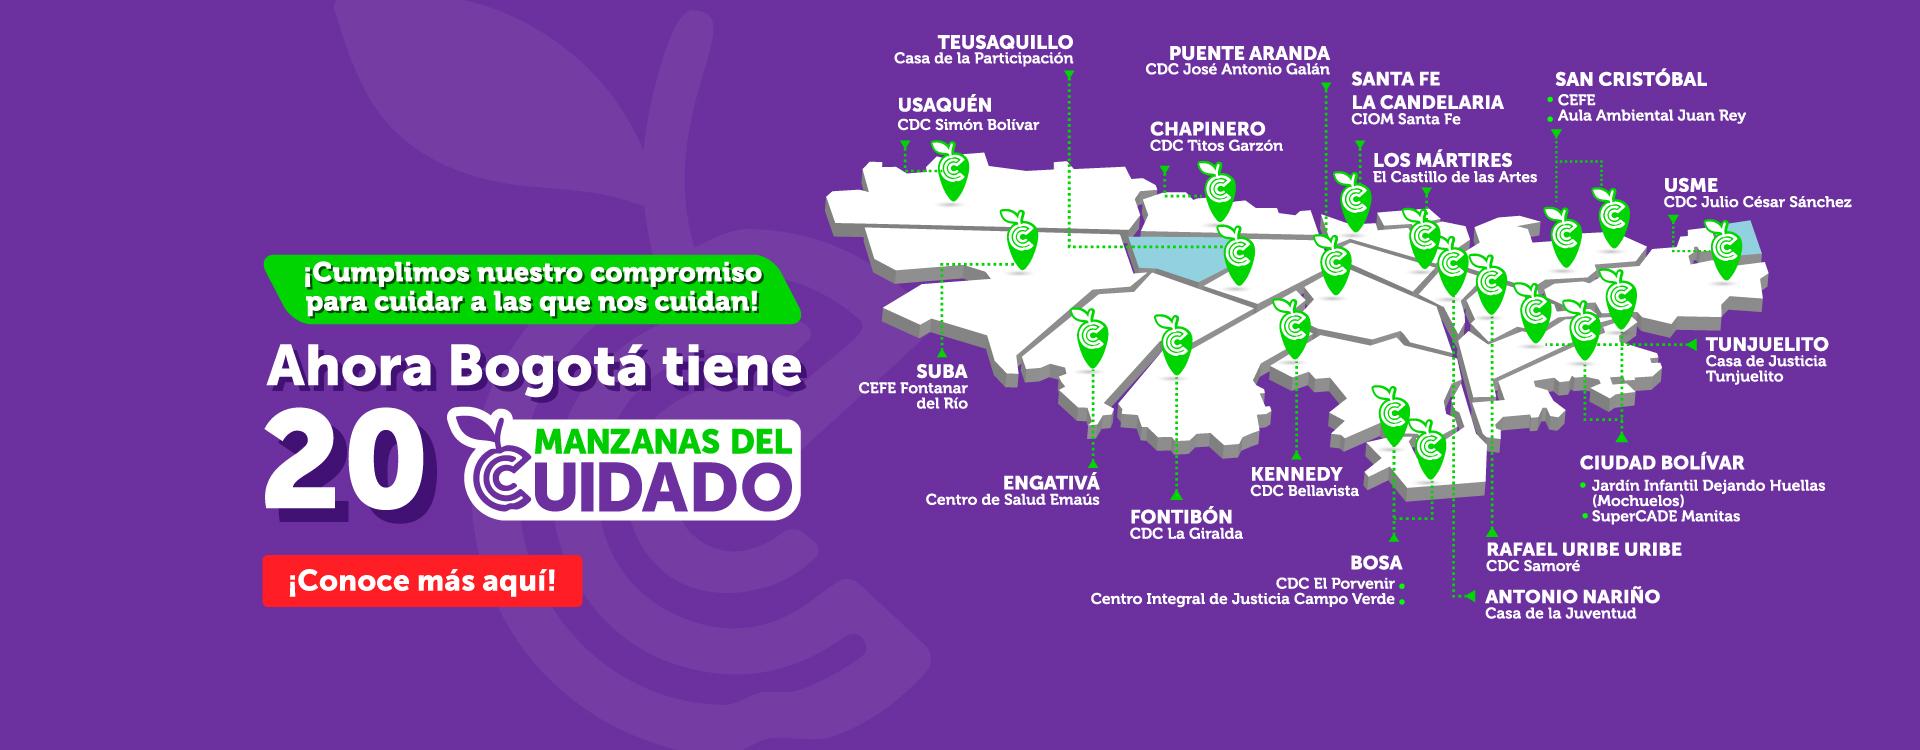 Imagen carrusel - Sistema de Cuidado, estamos construyendo una Bogotá con más bienestar para las personas cuidadoras y sus familias